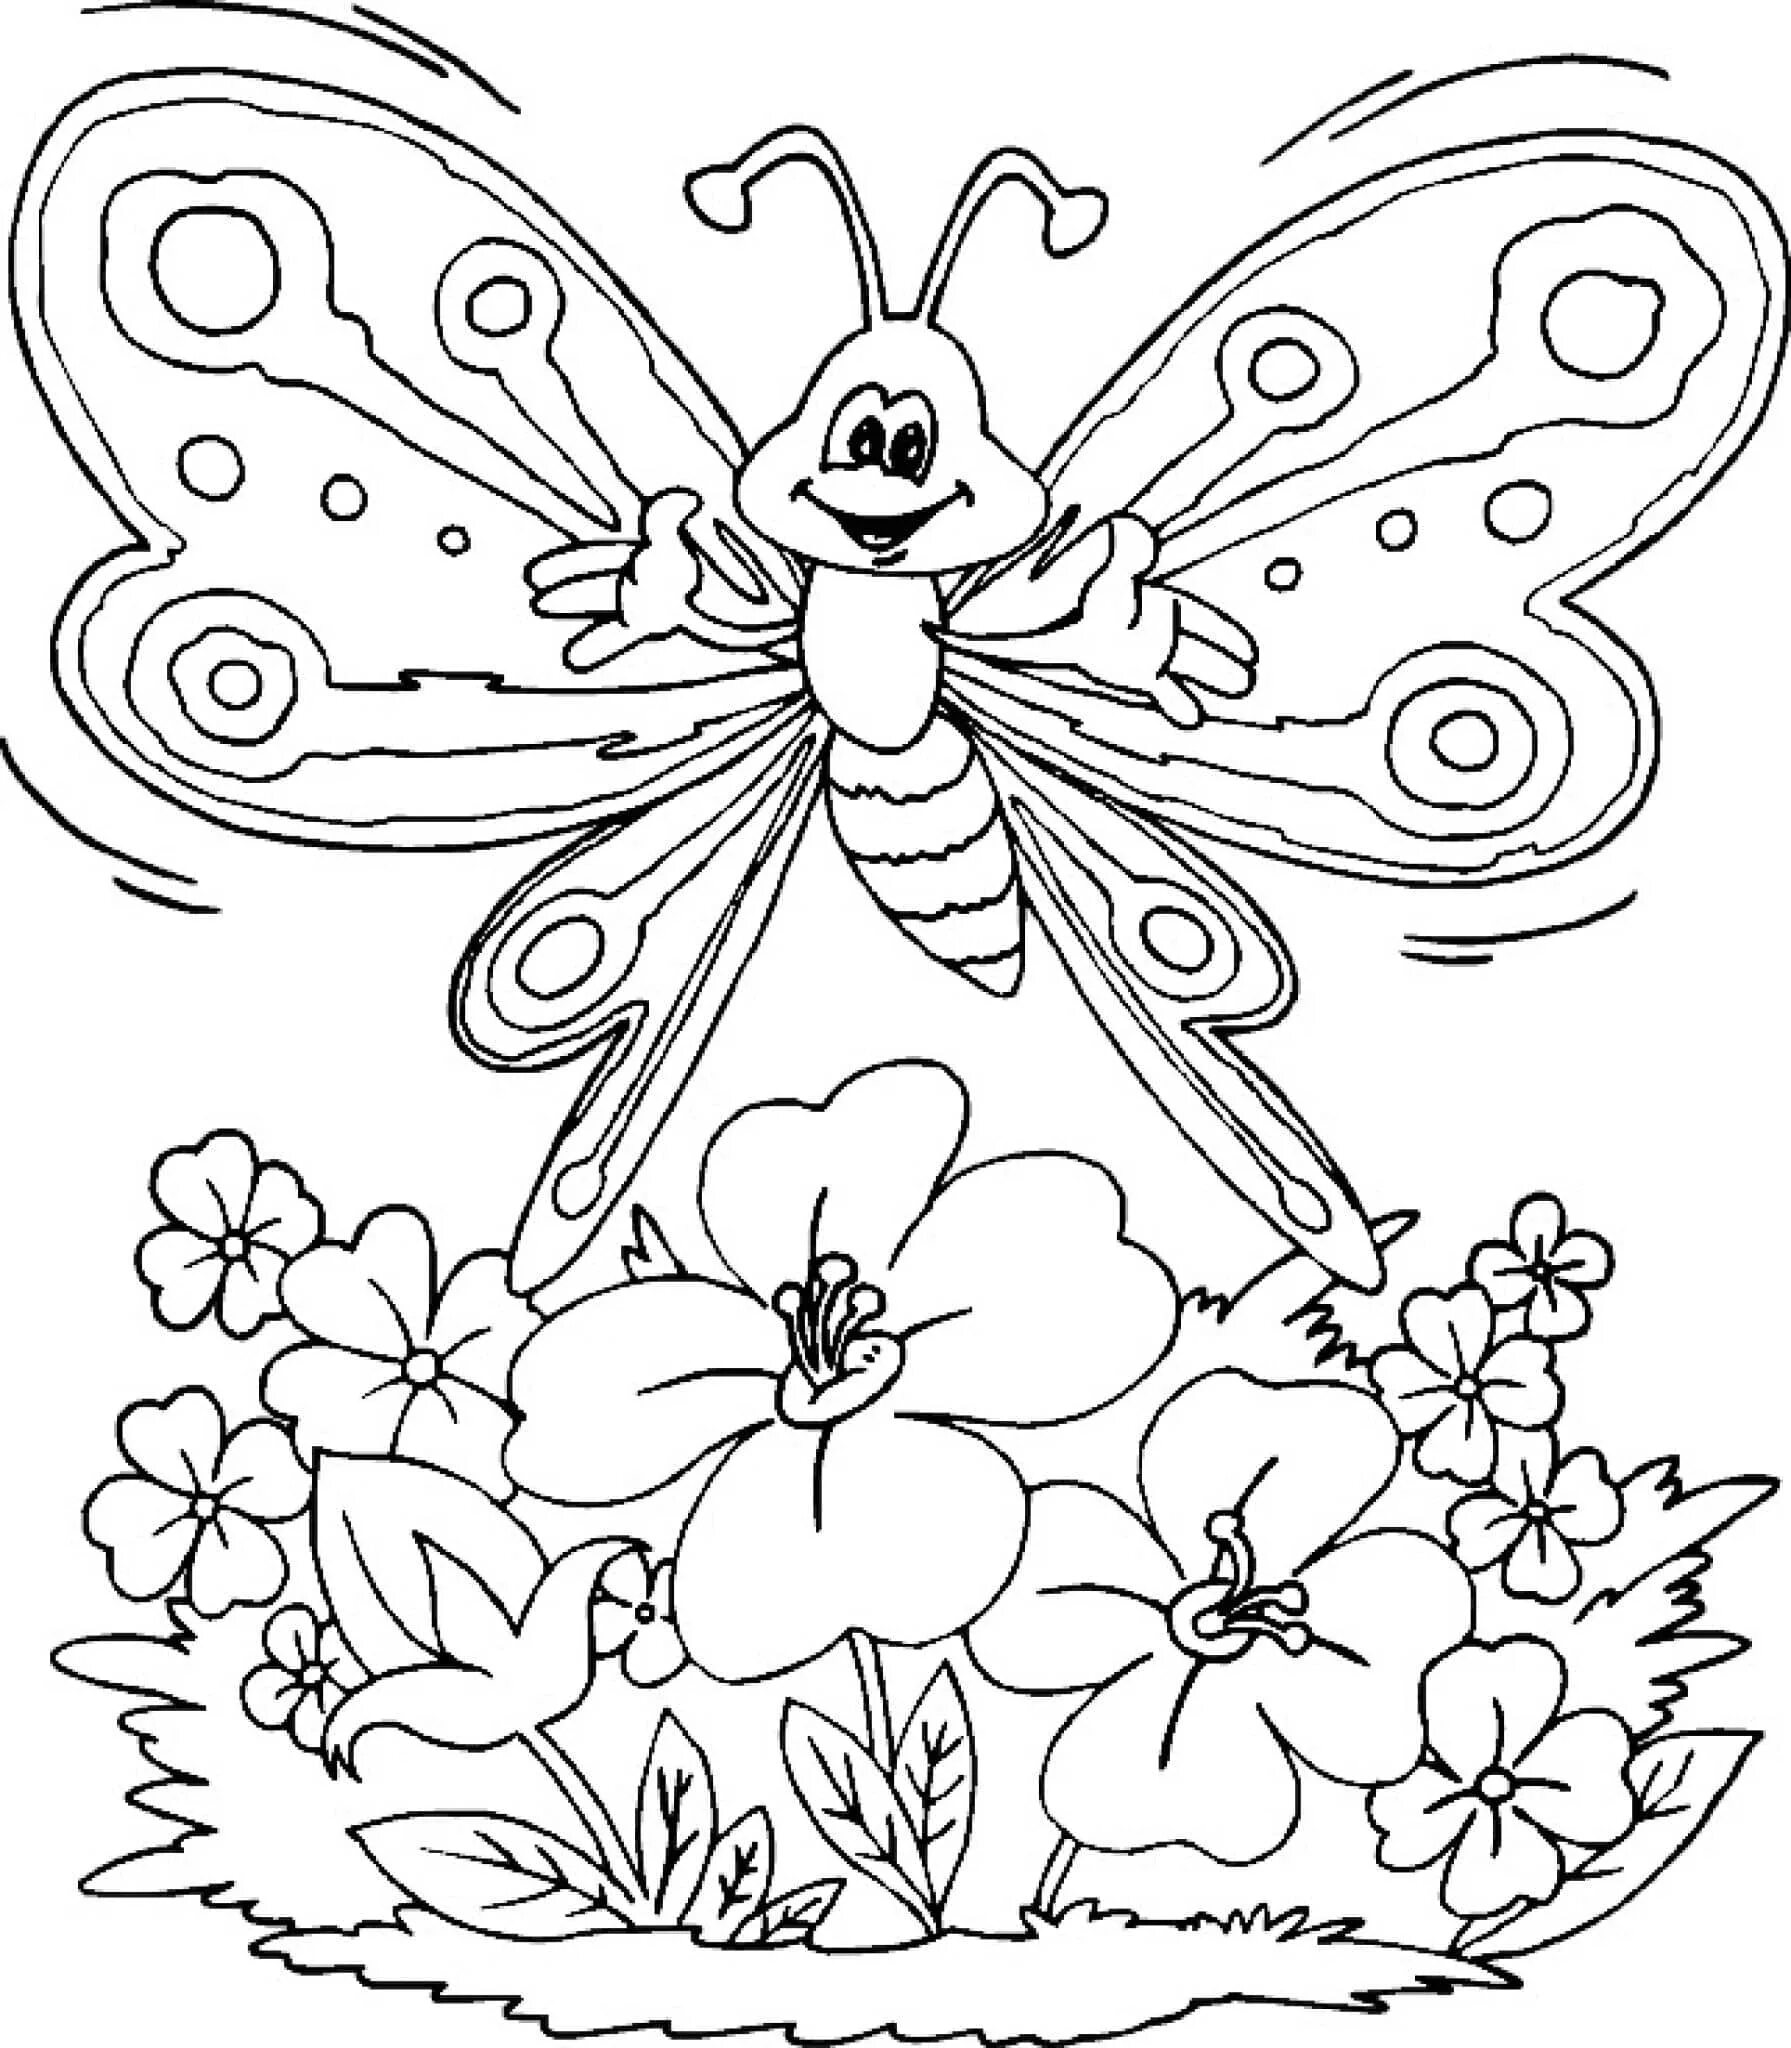 Раскраски для детей 8 9 лет распечатать. Раскраска "бабочки". Цветы и бабочки. Раскраска. Раскраски для девочек цветы и бабочки. Бабочка на цветочке раскраска.